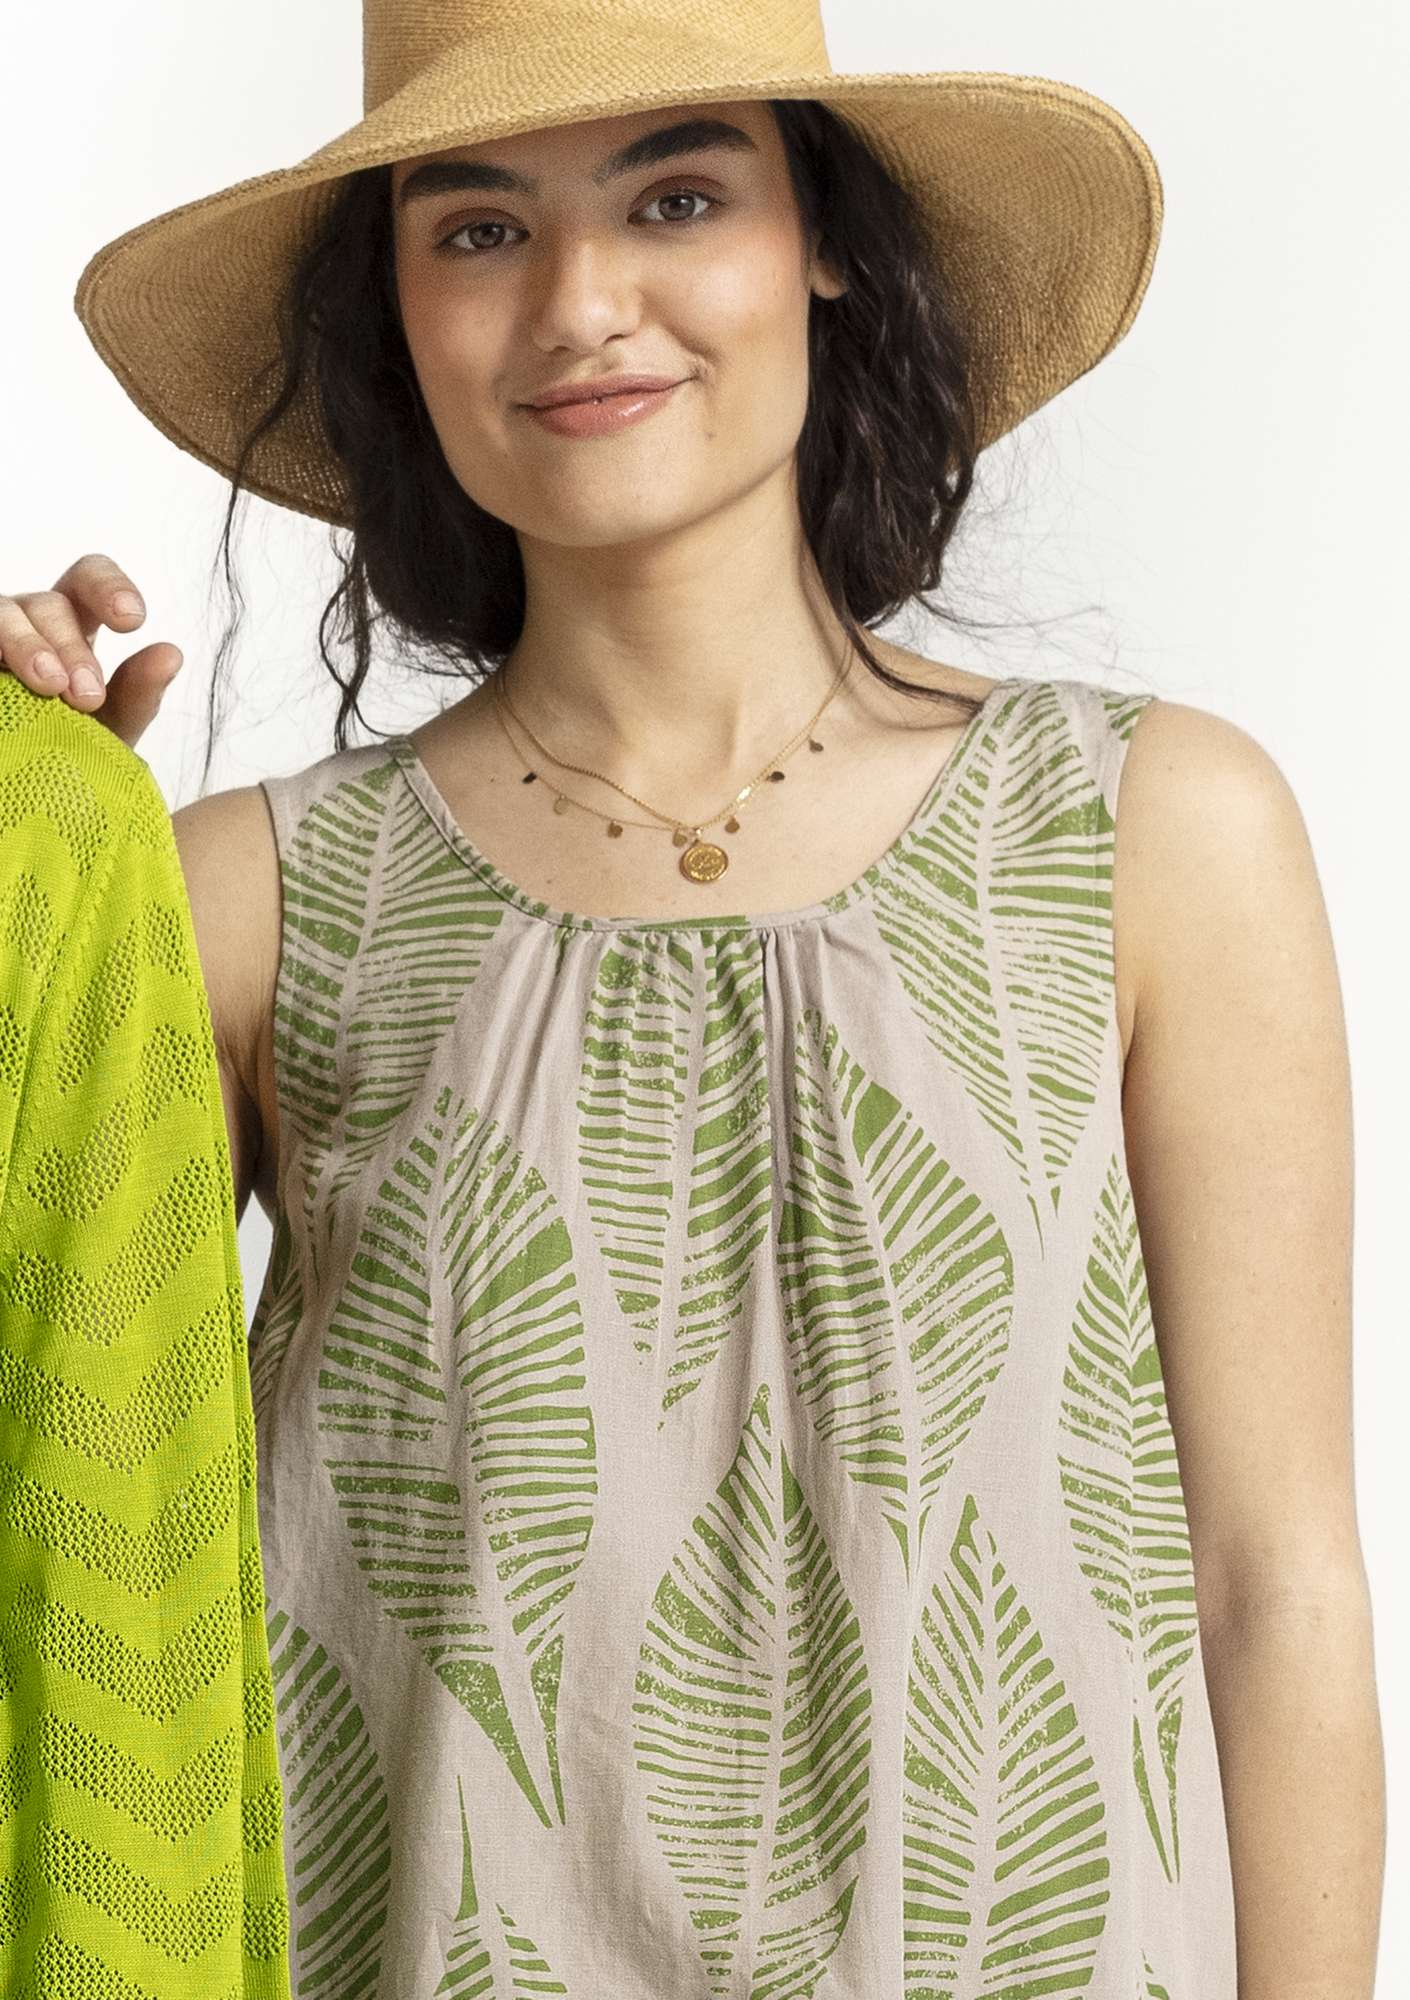 Vevd kjole «Decor» i økologisk bomull/lin naturmelert